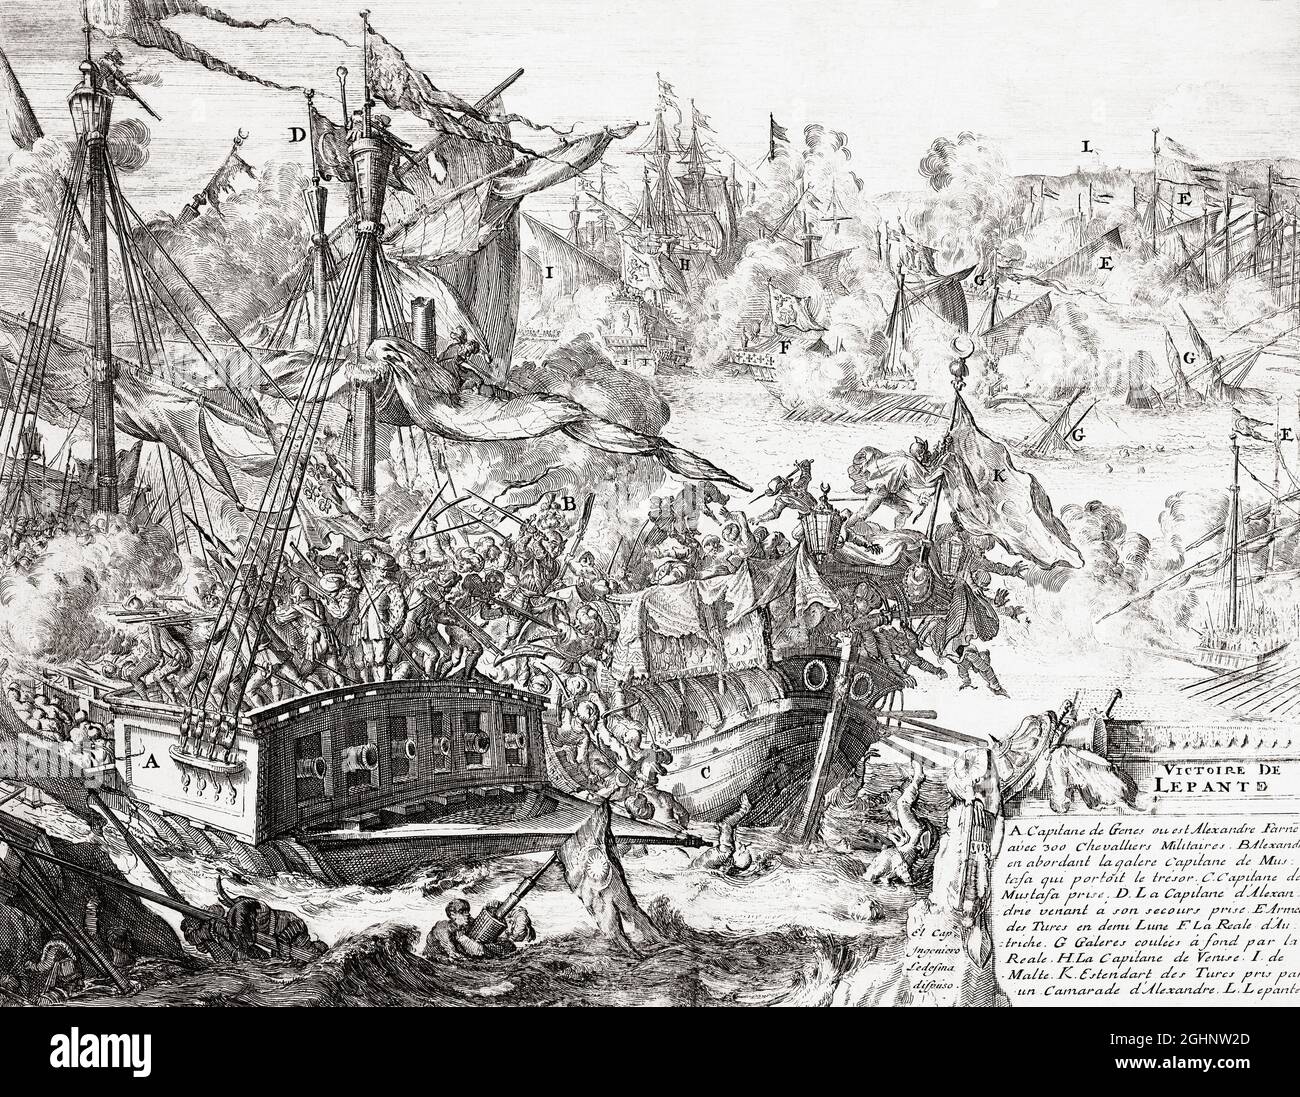 Die Schlacht von Lepanto, 7. Oktober 1571, als die Flotte der Heiligen Liga, einer Koalition katholischer Staaten, die Flotte des Osmanischen Reiches entscheidend besiegte. Nach einer Arbeit aus dem späten 17. Jahrhundert. Stockfoto